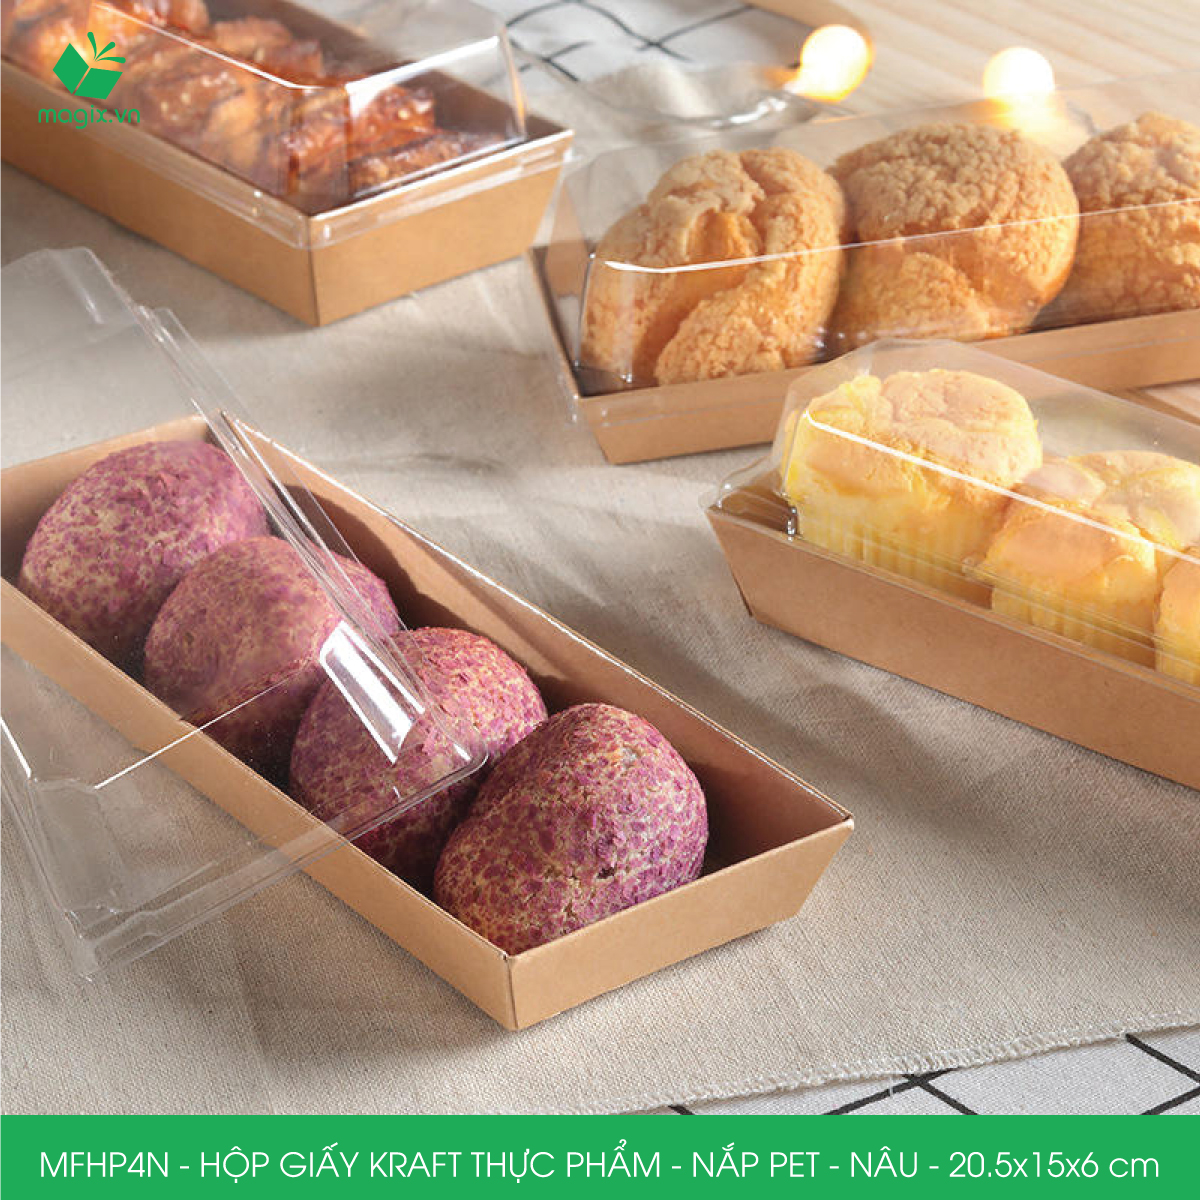 MFHP4N - 20.5x15x6 cm -100 hộp giấy kraft thực phẩm màu nâu nắp Pet, hộp giấy chữ nhật đựng thức ăn, hộp bánh nắp trong